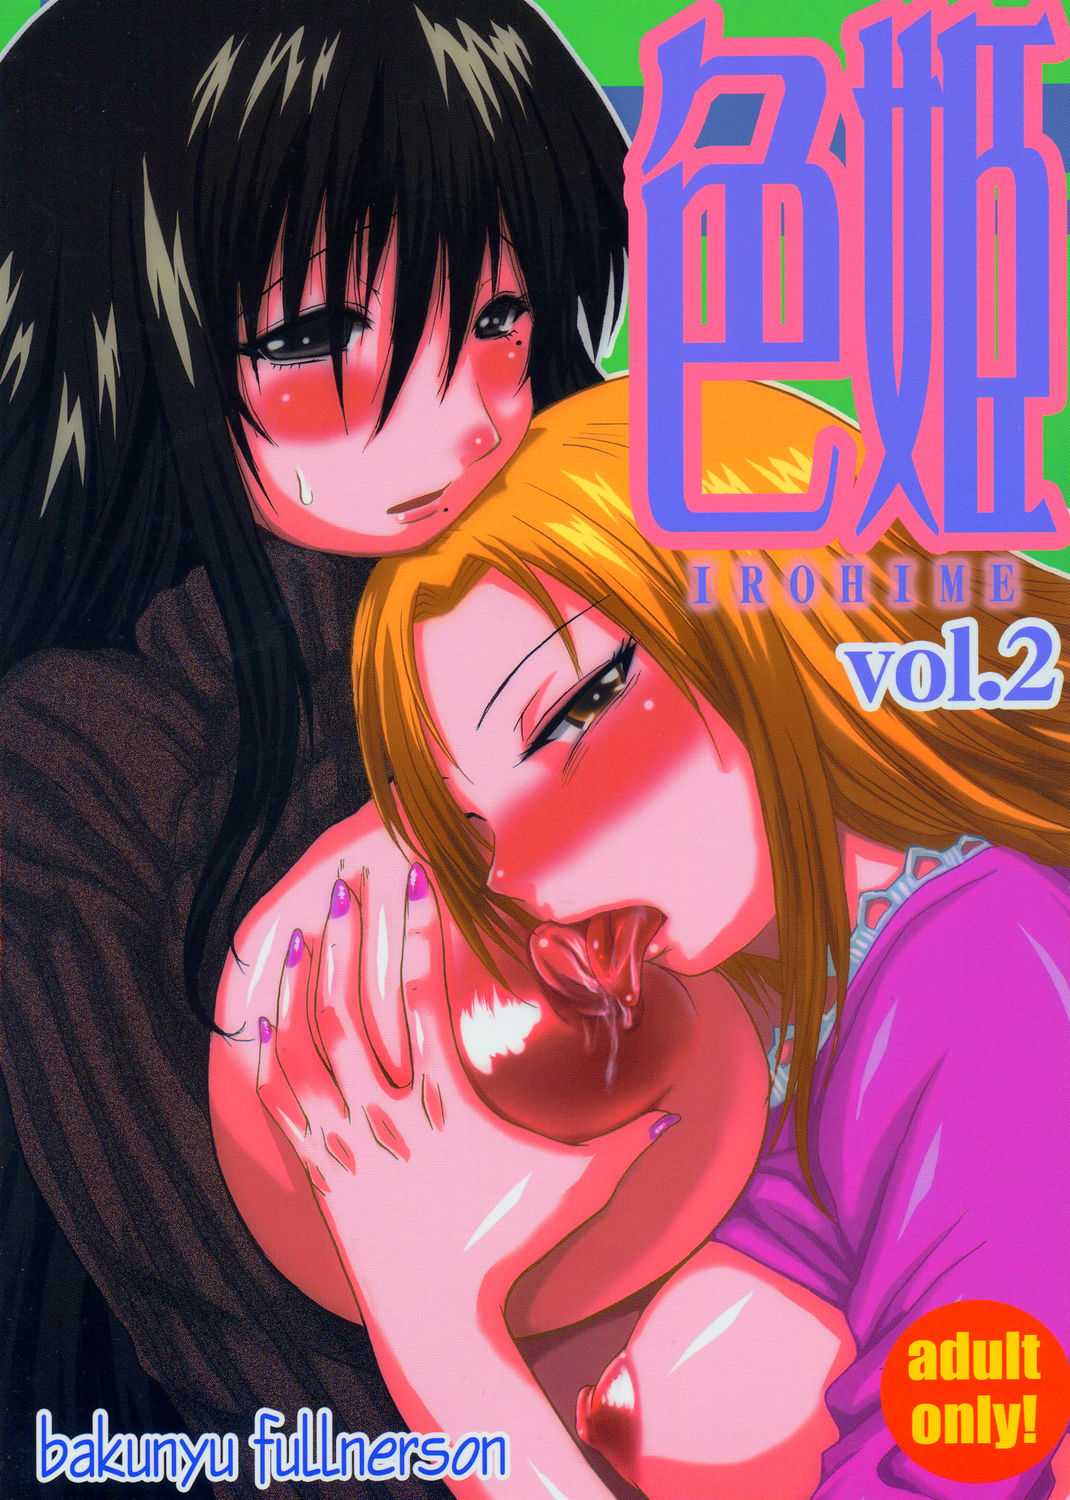 [Bakunyu Fullnerson] Irohime vol.2 (Genshiken) [爆乳フルネルソン] 色姫 vol.2 (げんしけん)